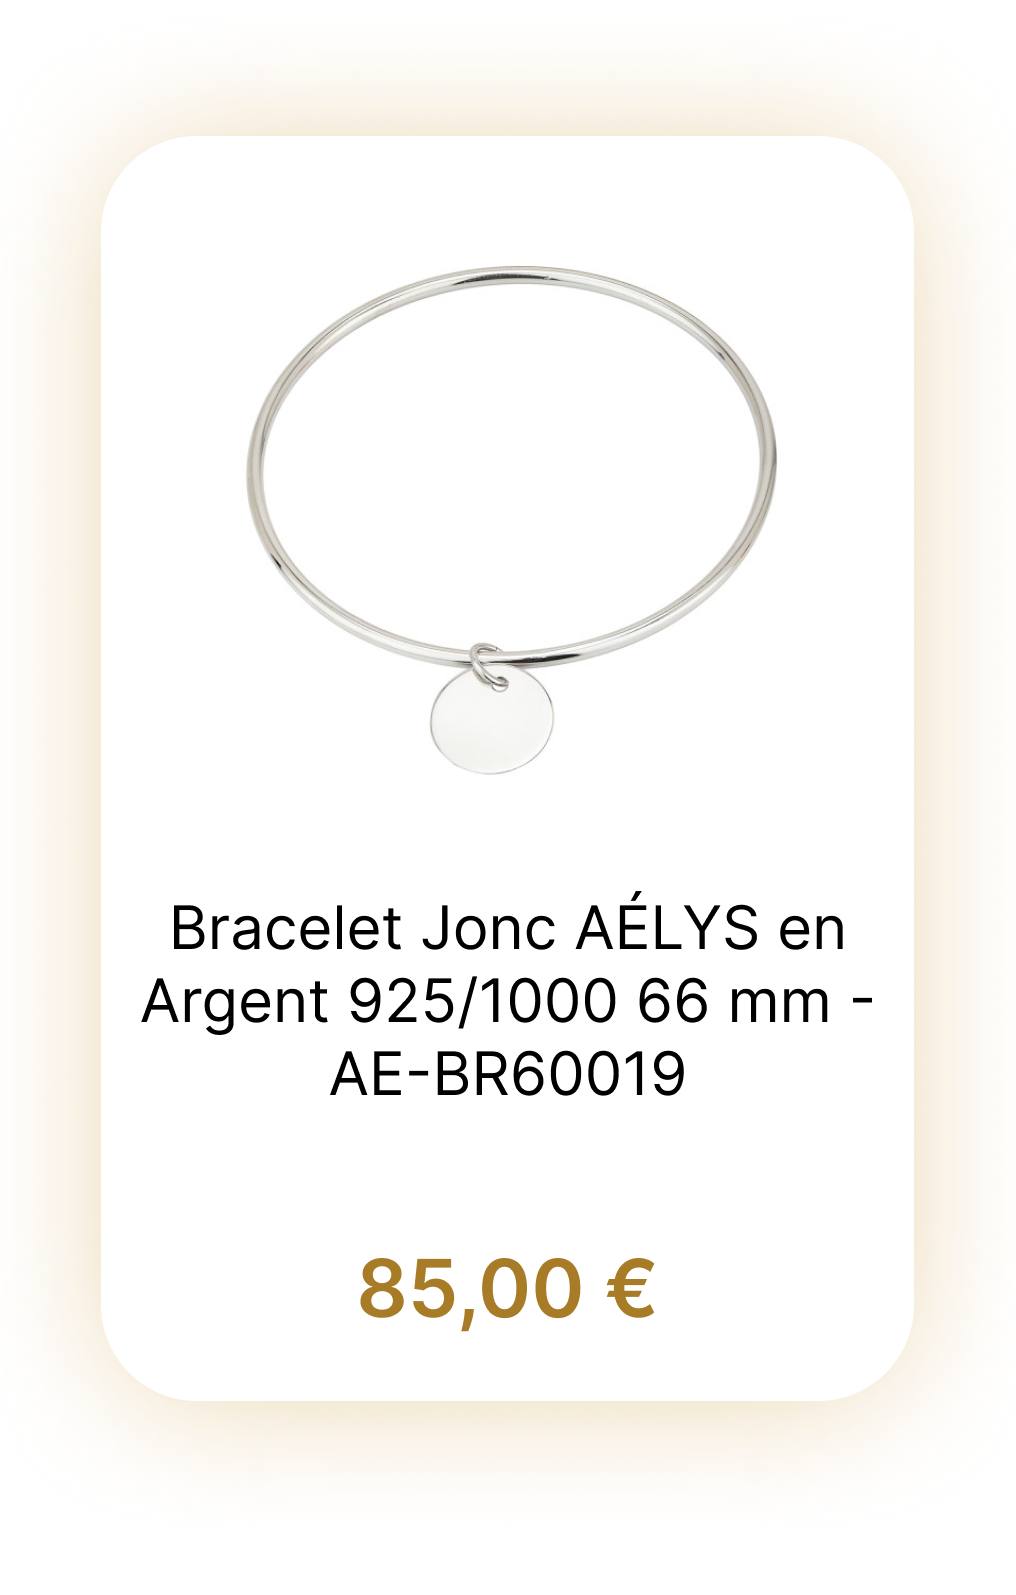 Bracelet Jonc AÉLYS en Argent 925/1000 66 mm